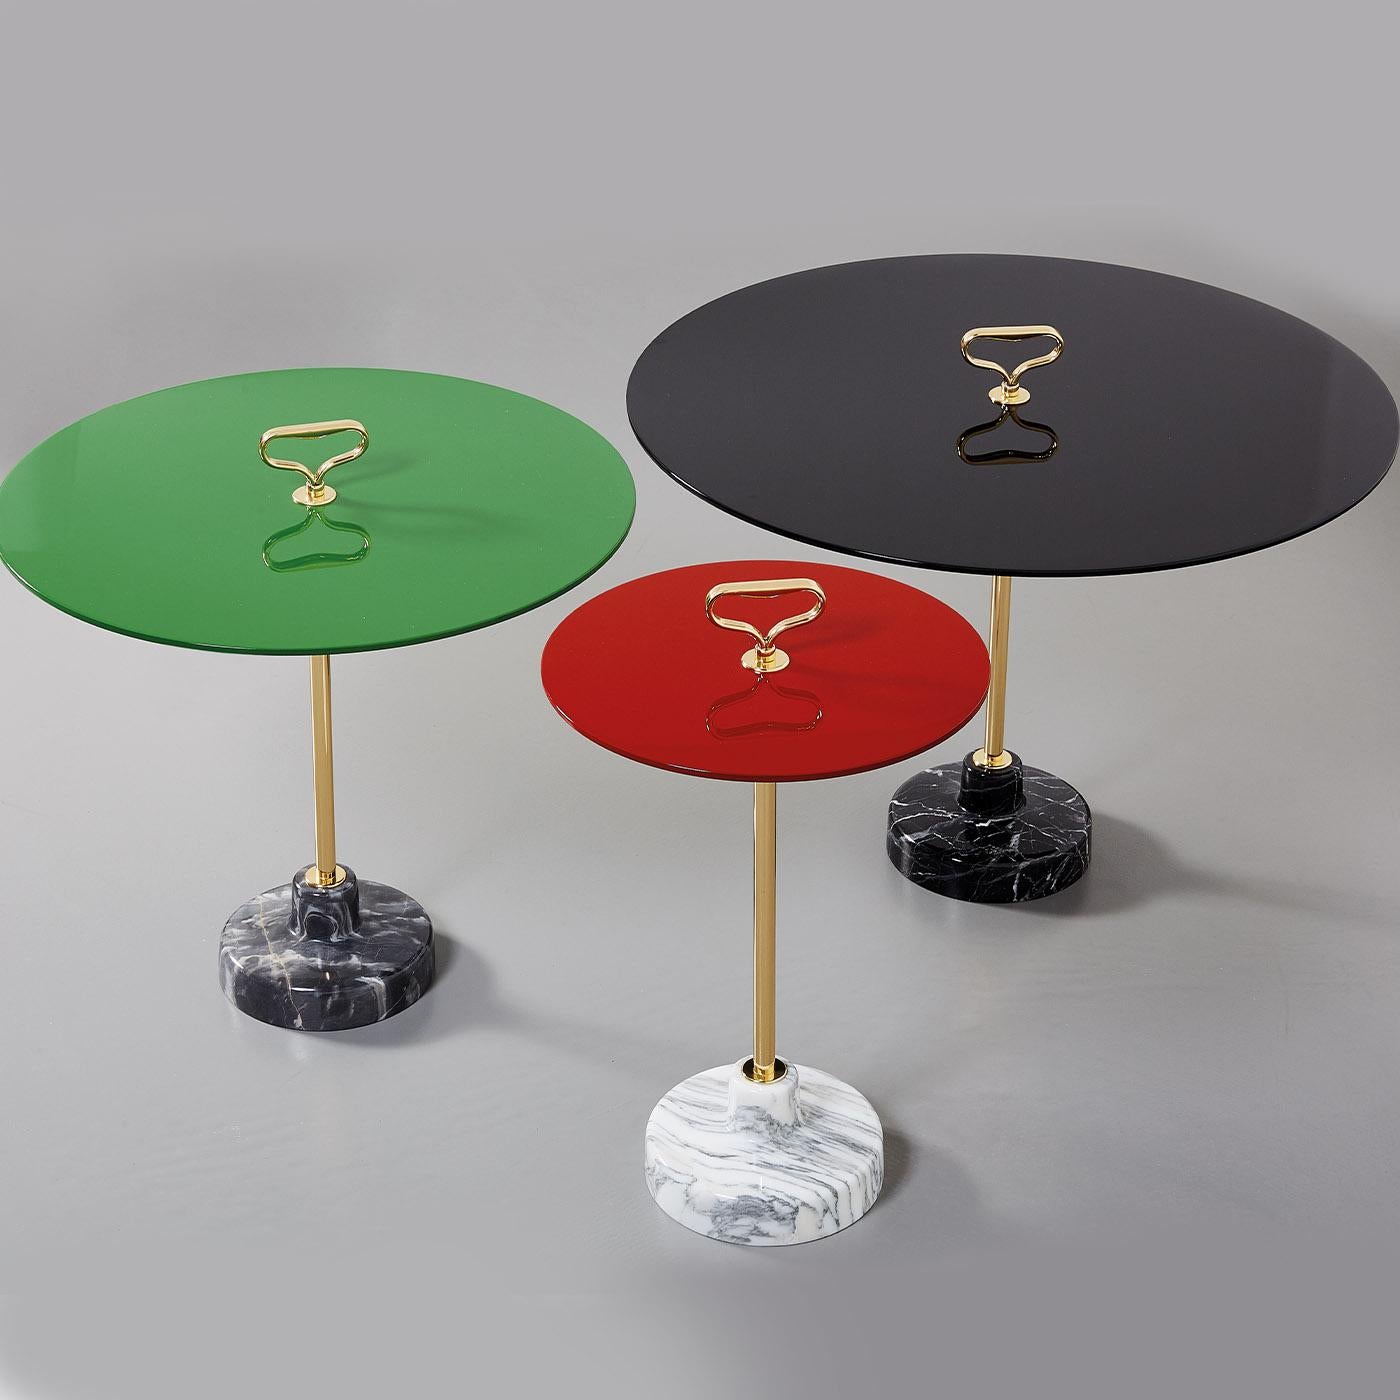 Fabriquée à la main avec des matériaux de première qualité, cette table d'appoint au design épuré et raffiné est une création étonnante d'Ignazio Gardella de la série de tables d'appoint Stand. Reposant sur une base en marbre noir, il présente une